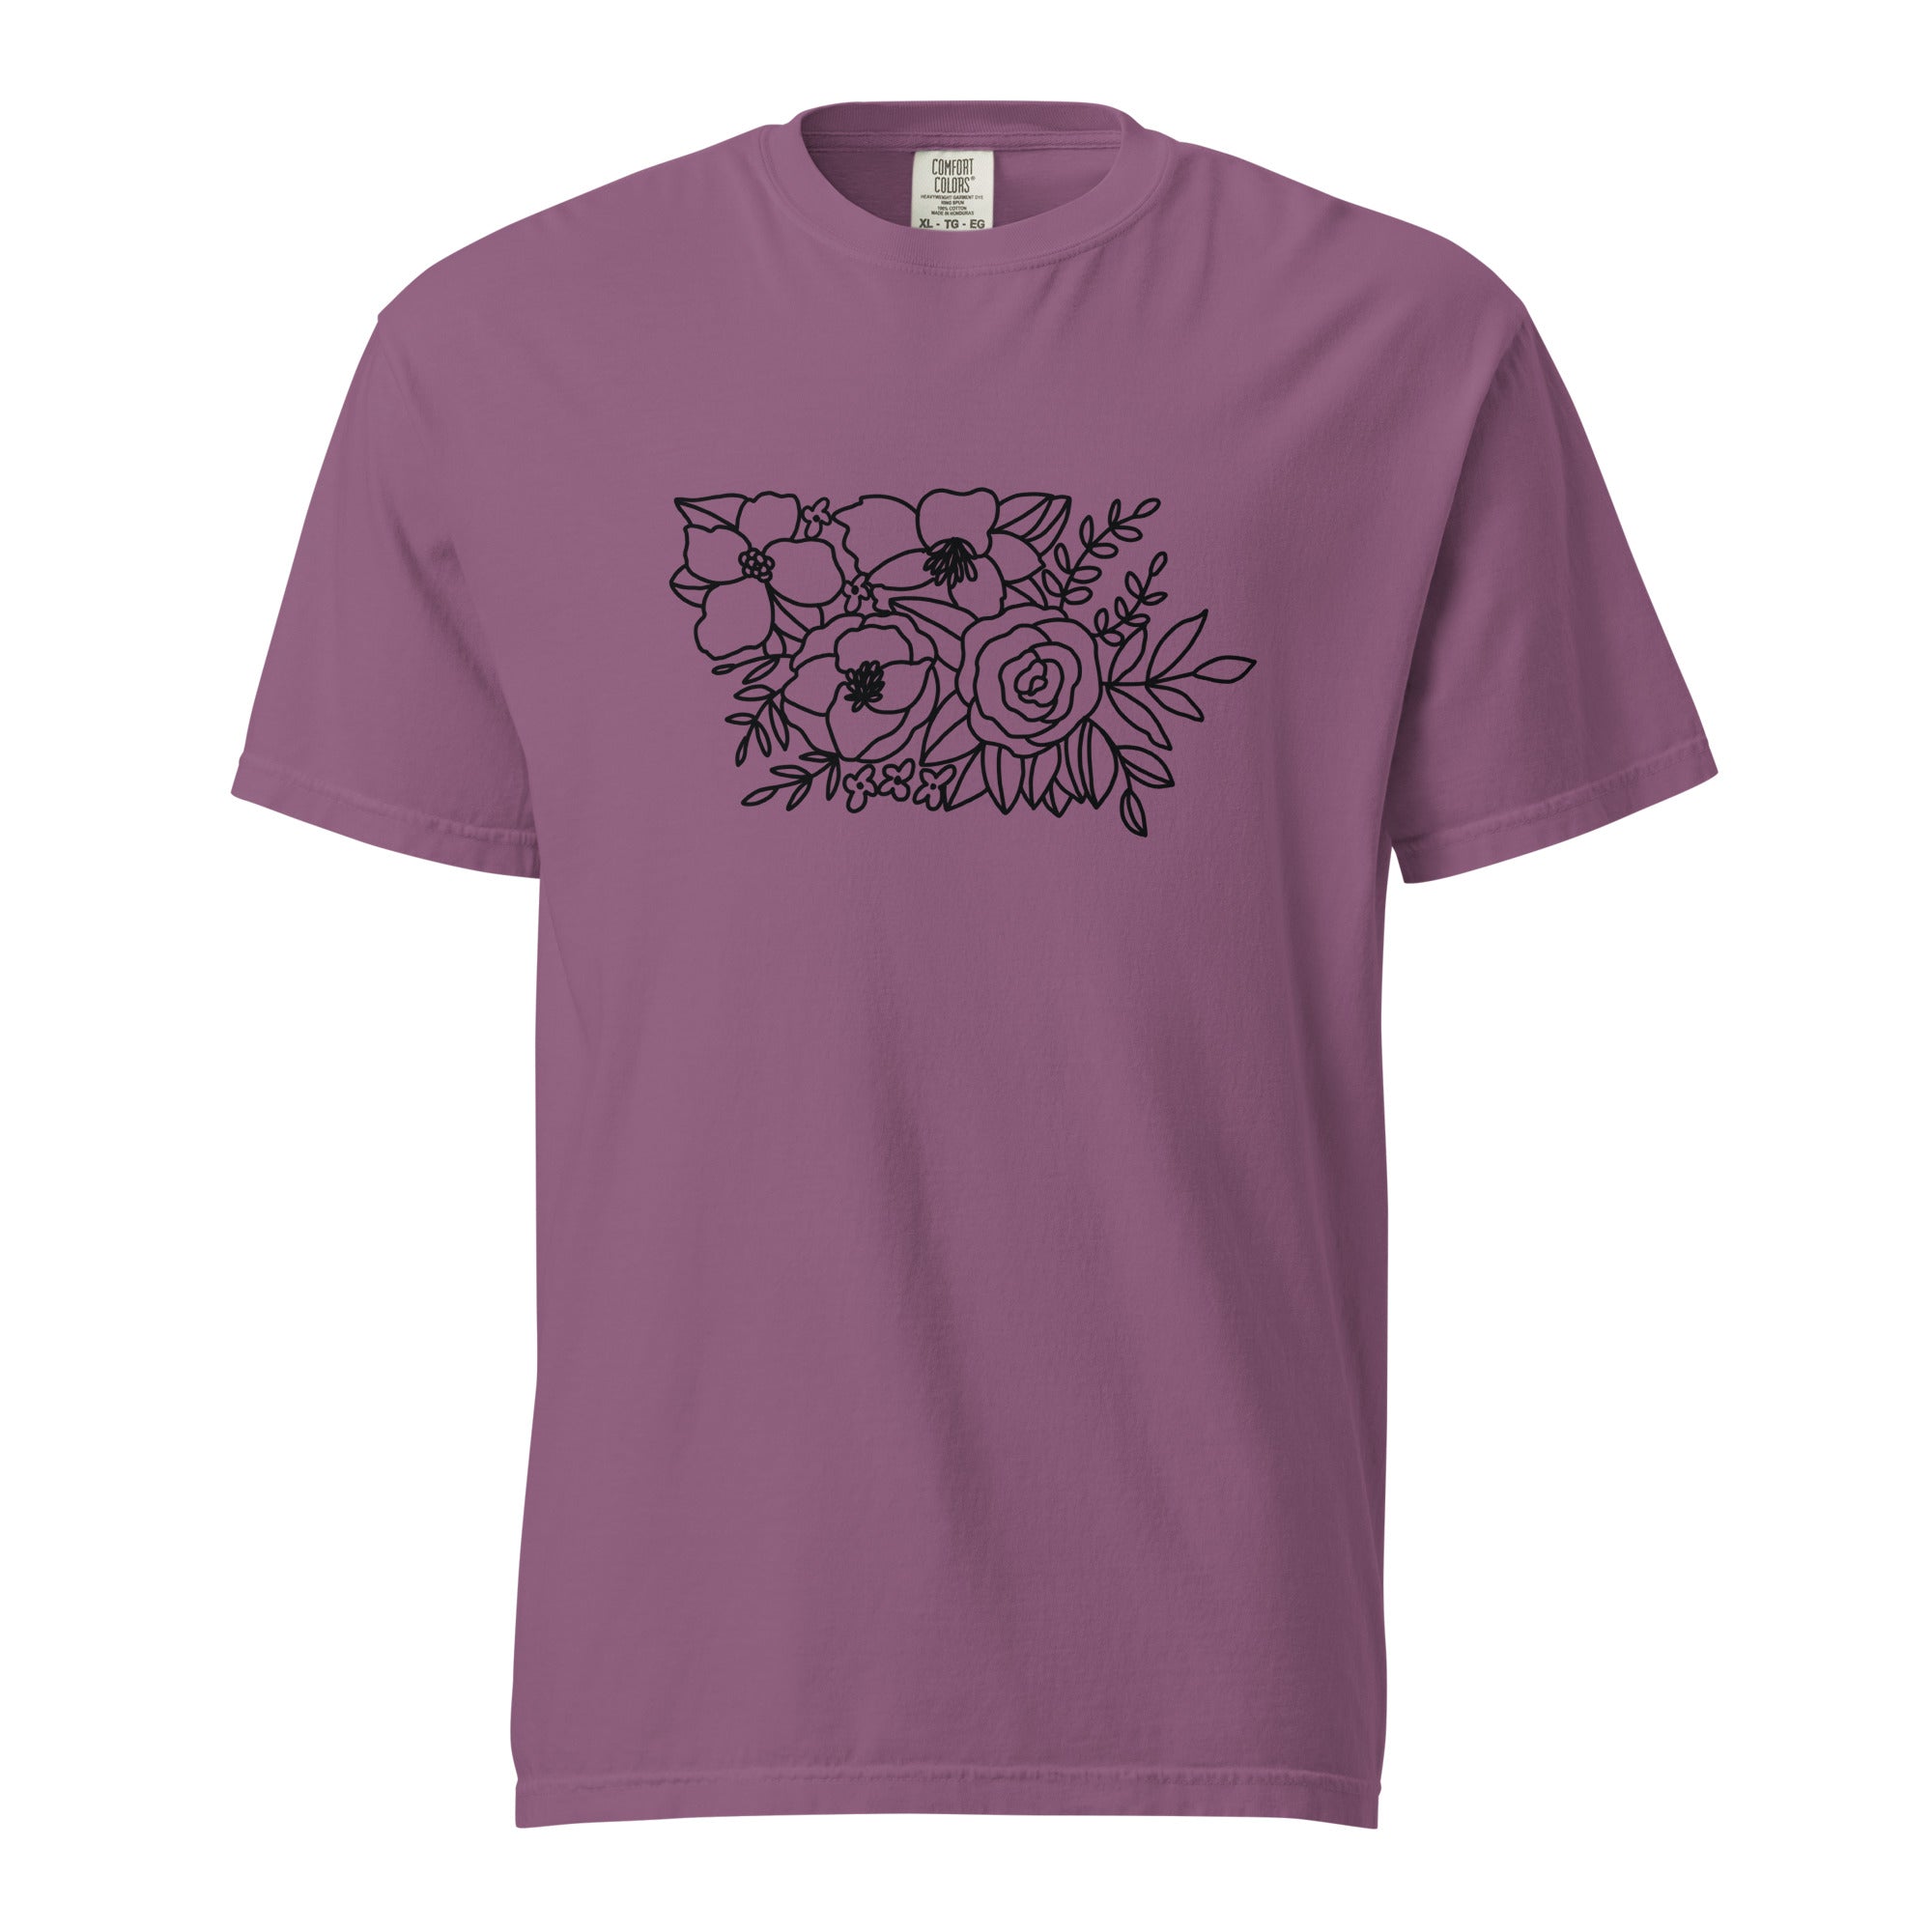 unisex-garment-dyed-heavyweight-t-shirt-berry-front-65b42b591a5c0.jpg